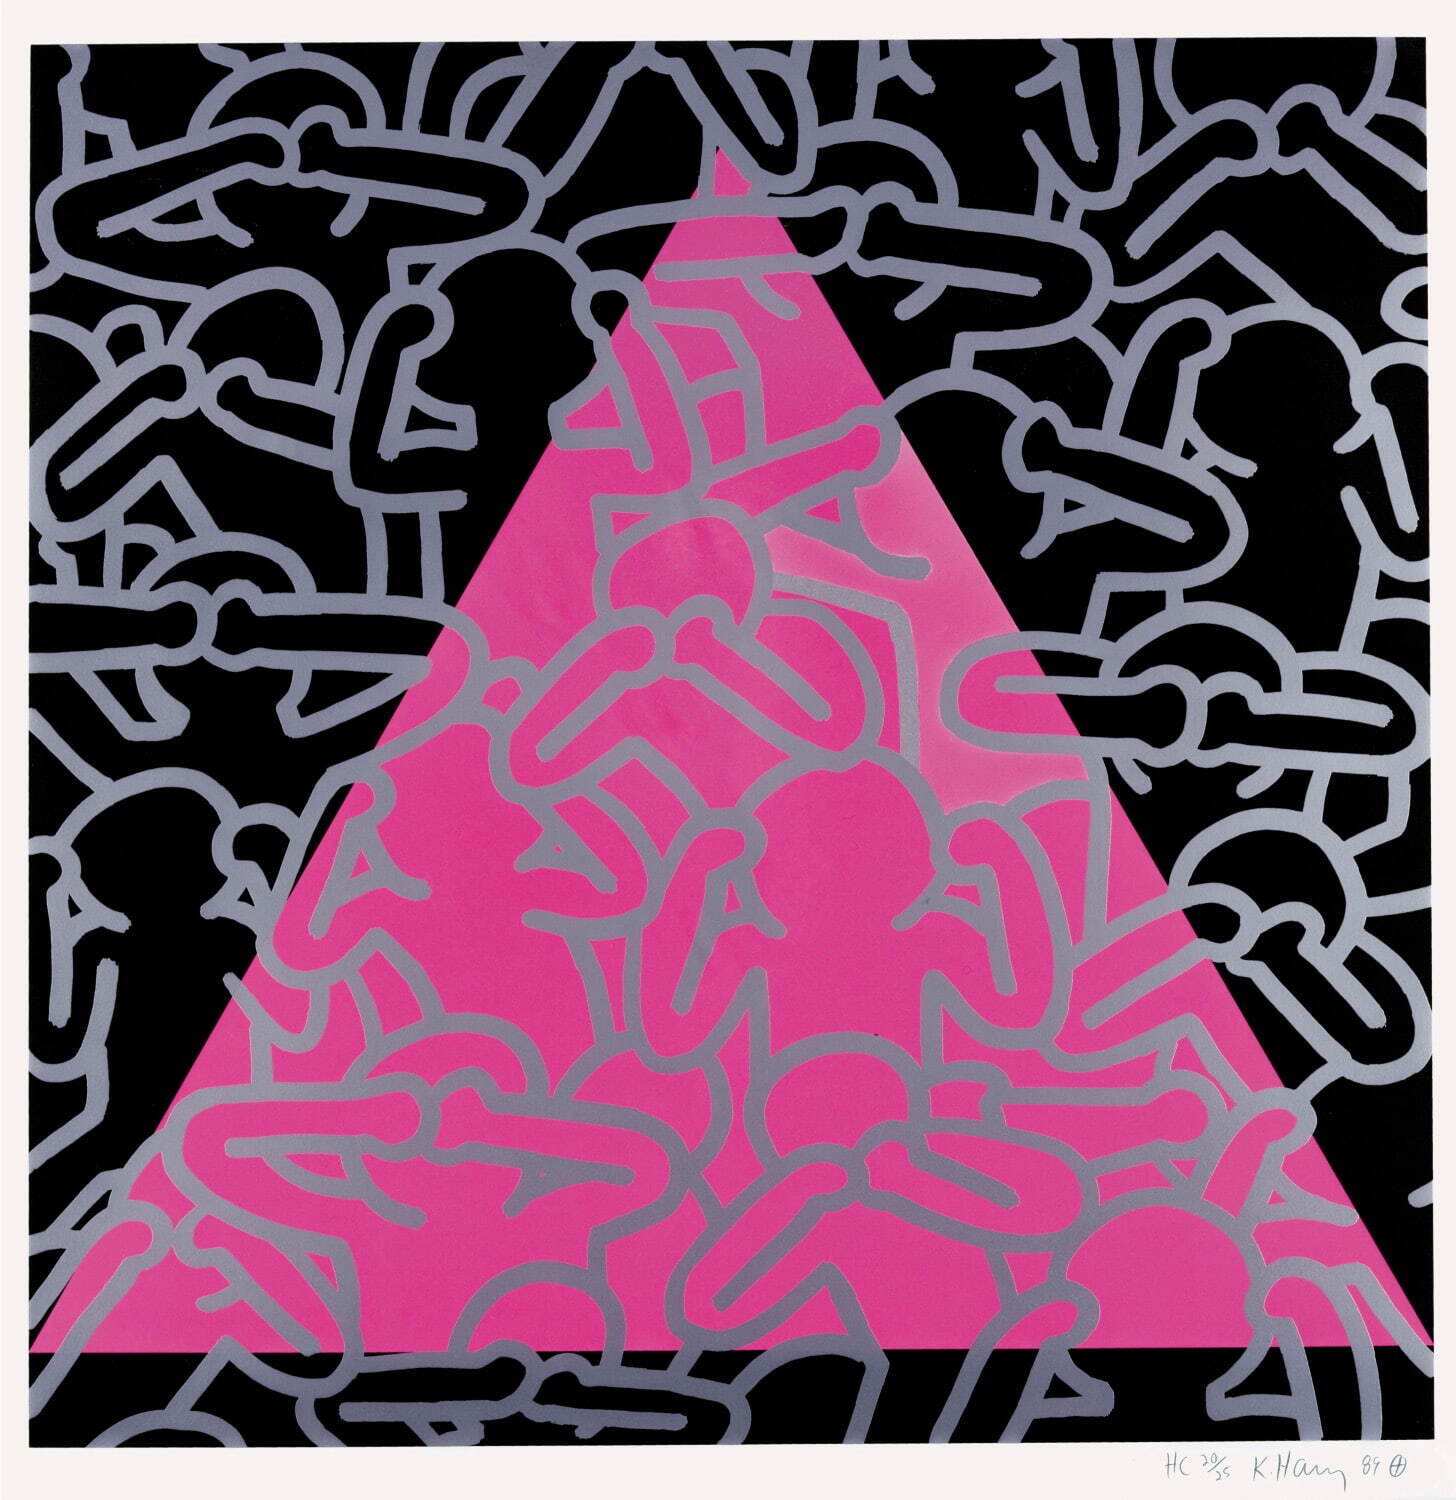 キース・ヘリング 《沈黙は死》 1989年
中村キース・ヘリング美術館蔵 Keith Haring Artwork ©Keith Haring Foundation